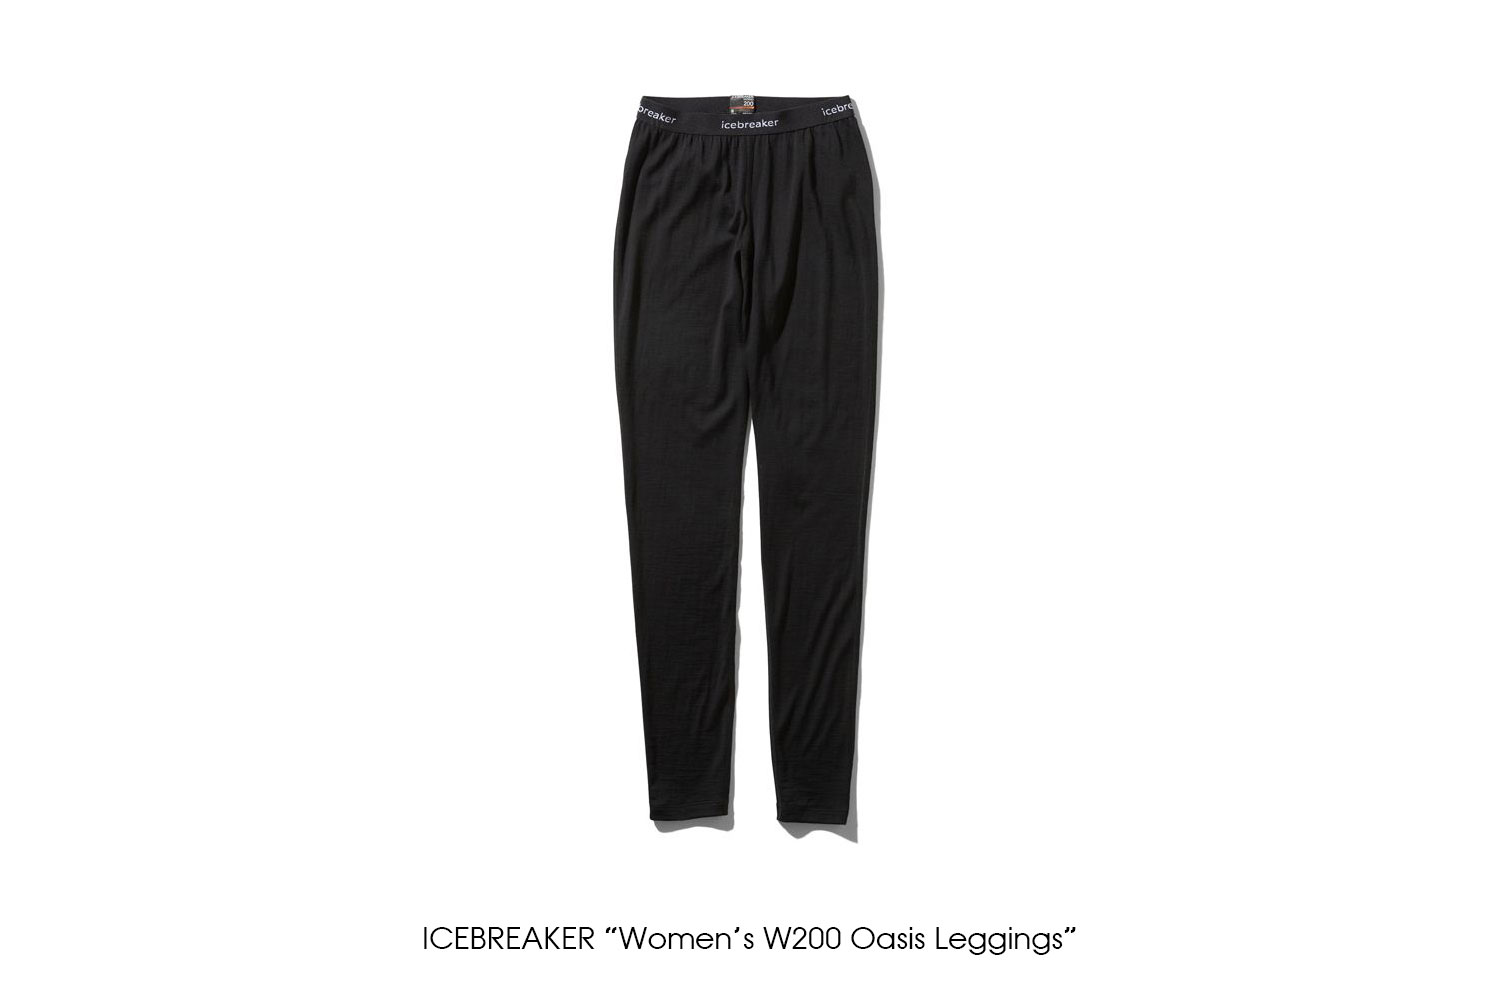 ICEBREAKER "Women's W200 Oasis Leggings"